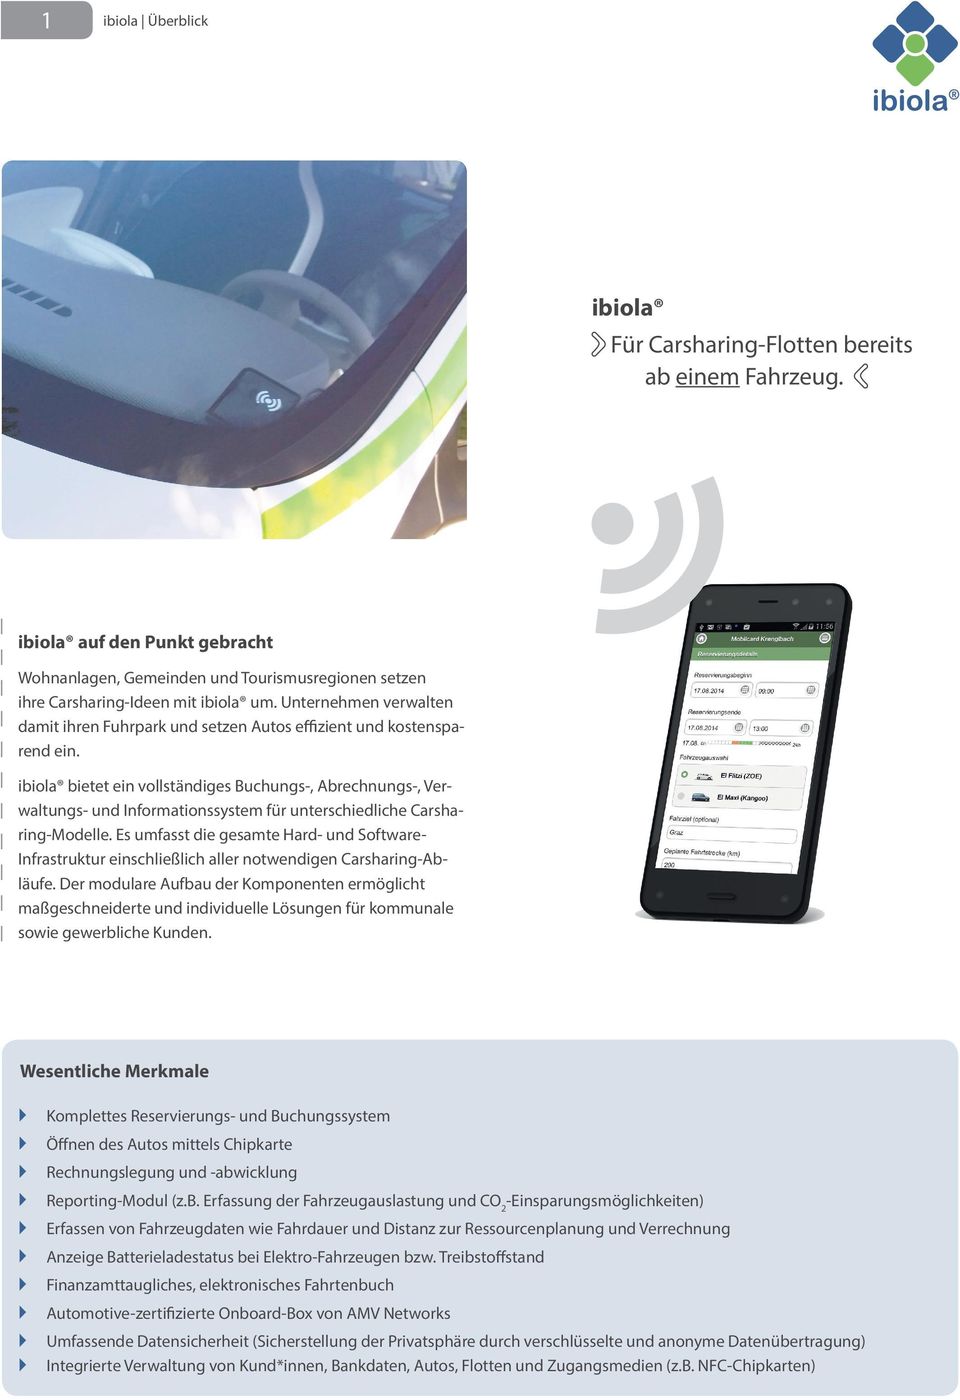 ibiola bietet ein vollständiges Buchungs-, Abrechnungs-, Verwaltungs- und Informationssystem für unterschiedliche Carsharing-Modelle.